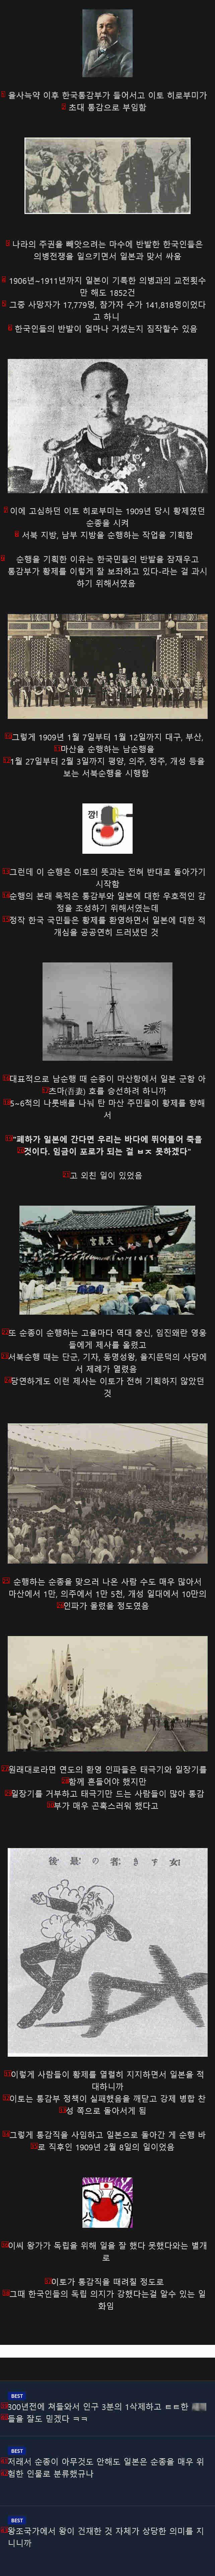 이토 히로부미가 한국 강제병합으로 돌아선 계기